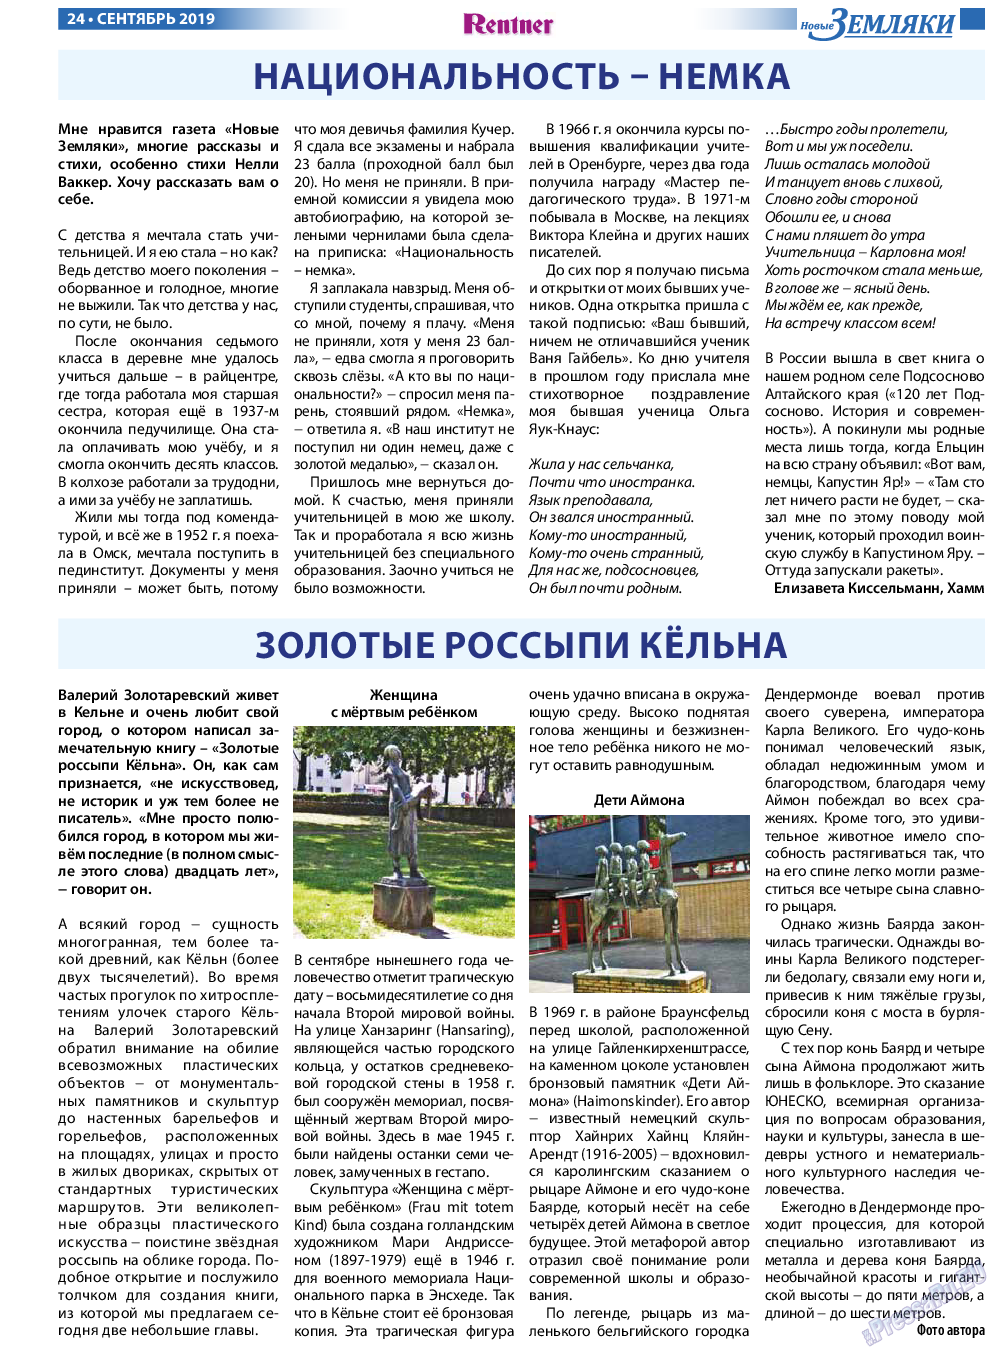 Новые Земляки, газета. 2019 №9 стр.24